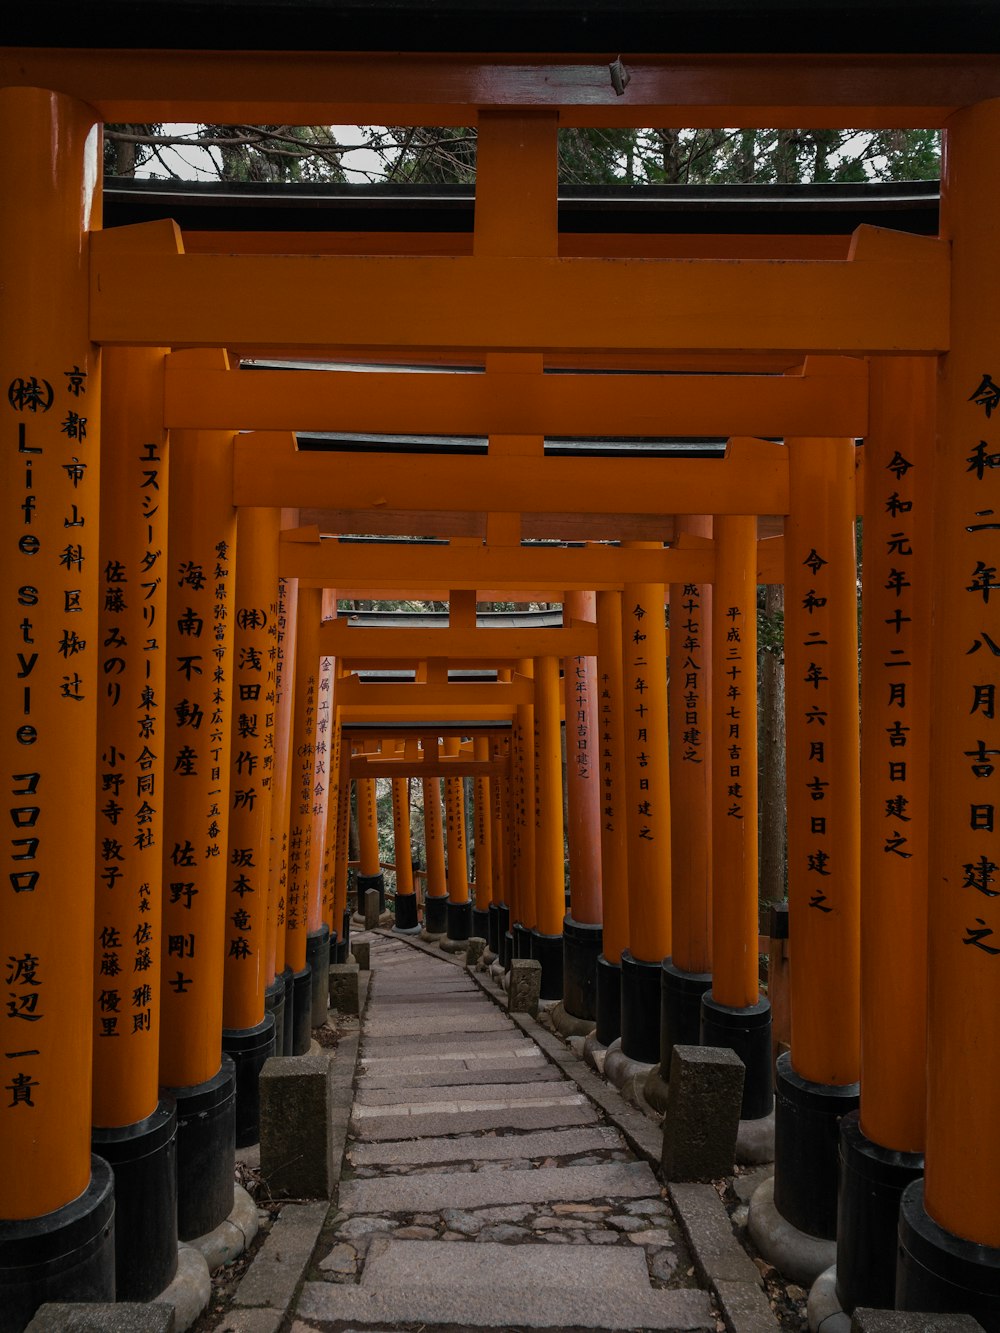 Una pasarela bordeada de muchos pilares altos de color naranja